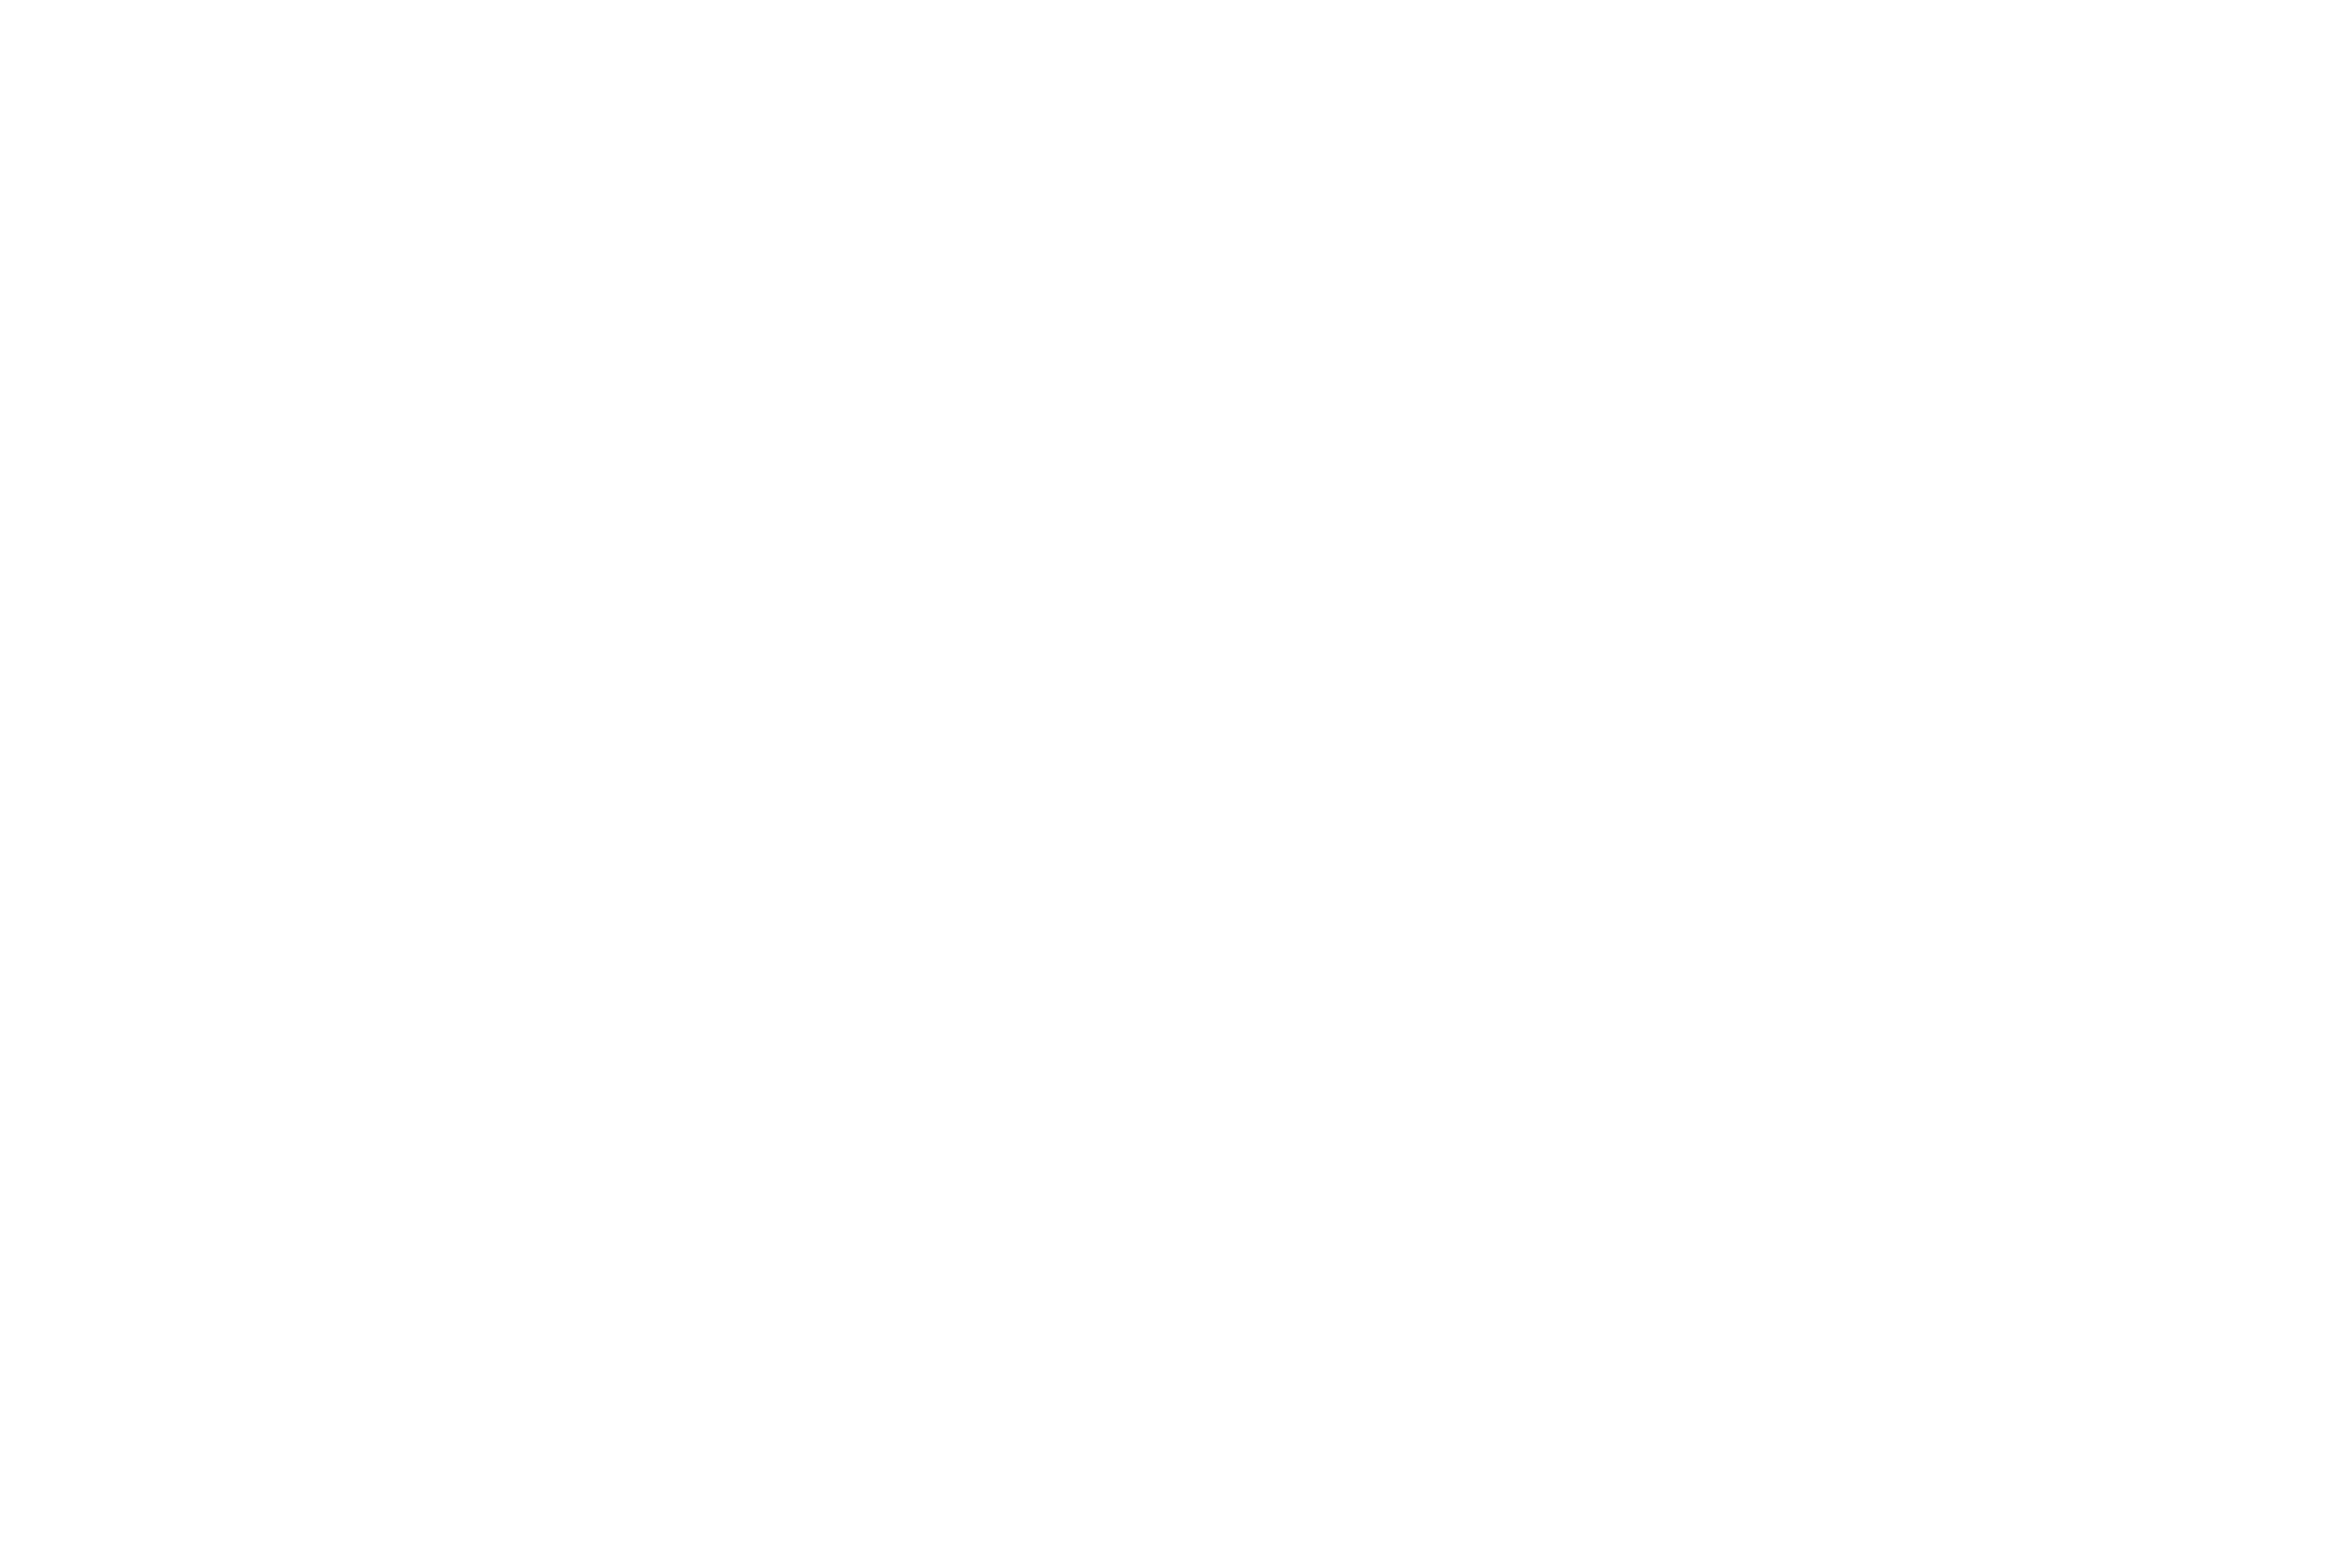 Precinct Nightclub